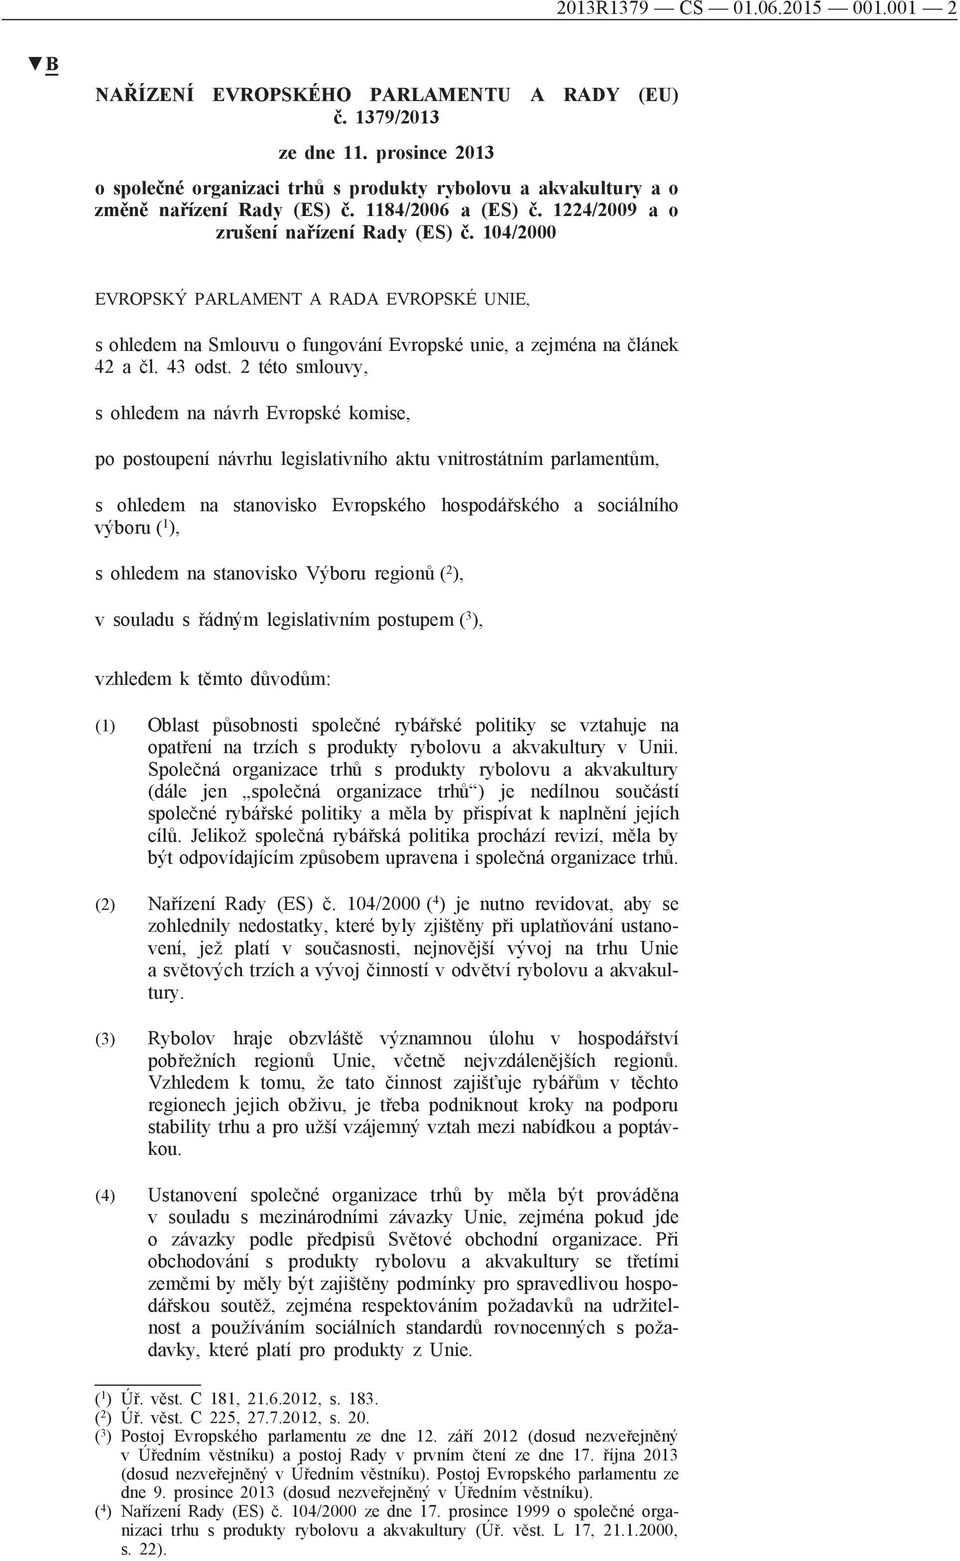 104/2000 EVROPSKÝ PARLAMENT A RADA EVROPSKÉ UNIE, s ohledem na Smlouvu o fungování Evropské unie, a zejména na článek 42 a čl. 43 odst.